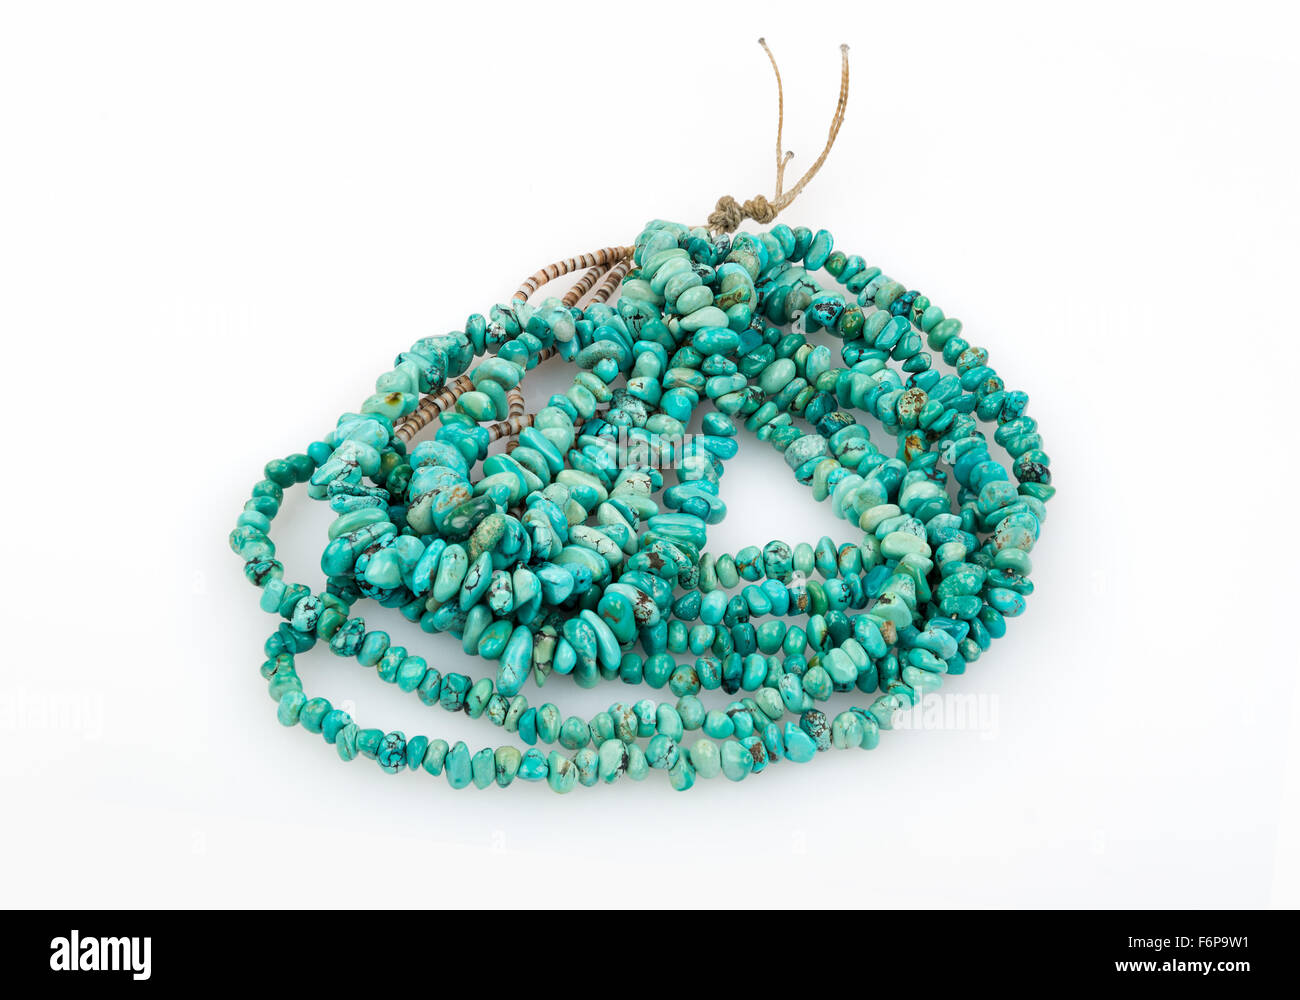 Native American turquoise et pépite heishe collier de perles sur fond blanc. Banque D'Images